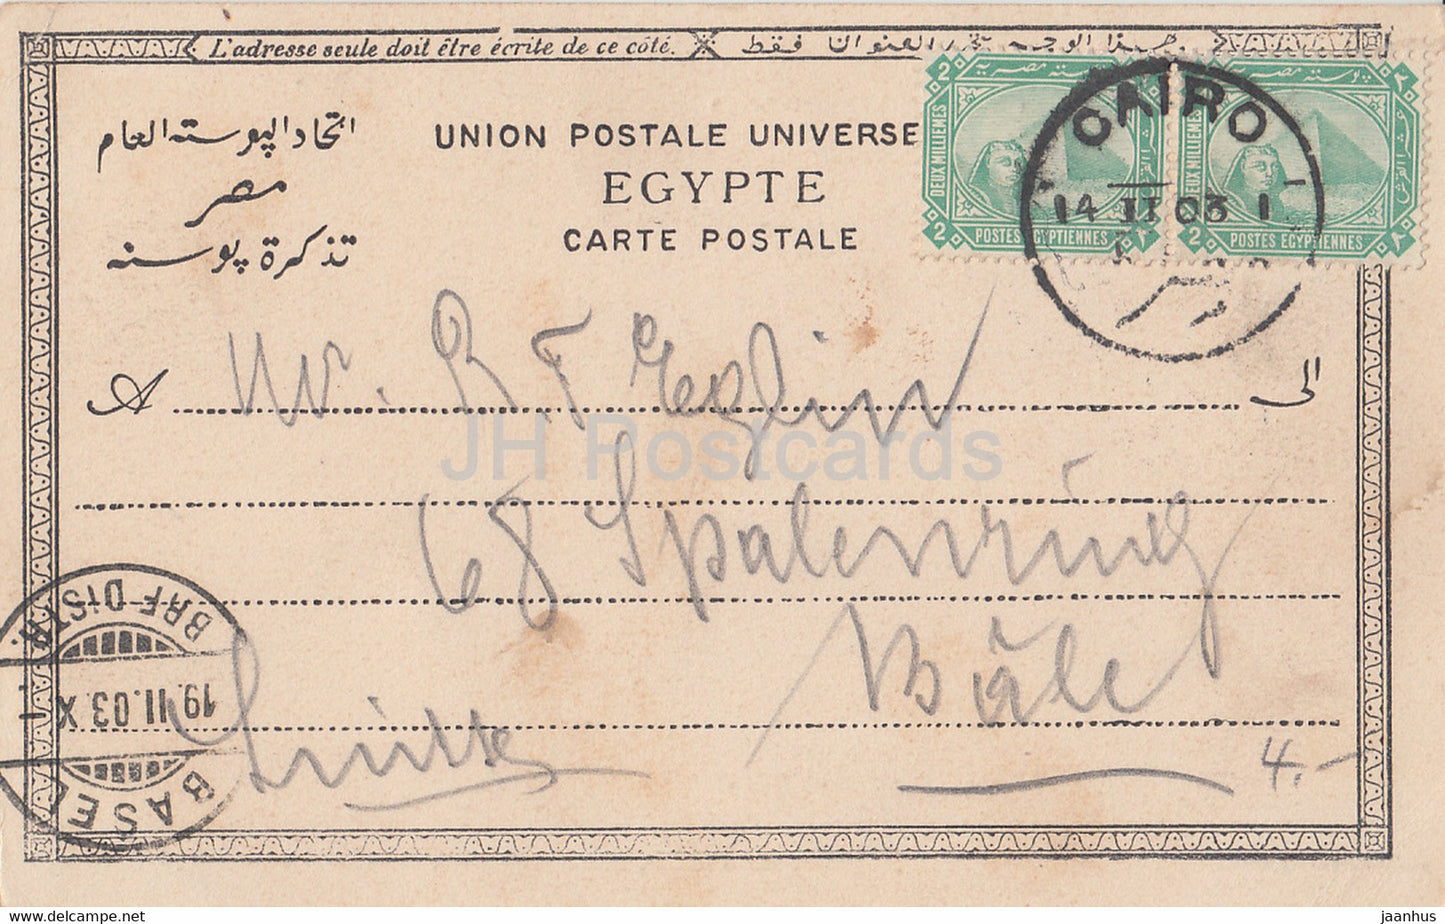 Philae - Antike Welt - 251 - alte Postkarte - 1903 - Ägypten - gebraucht